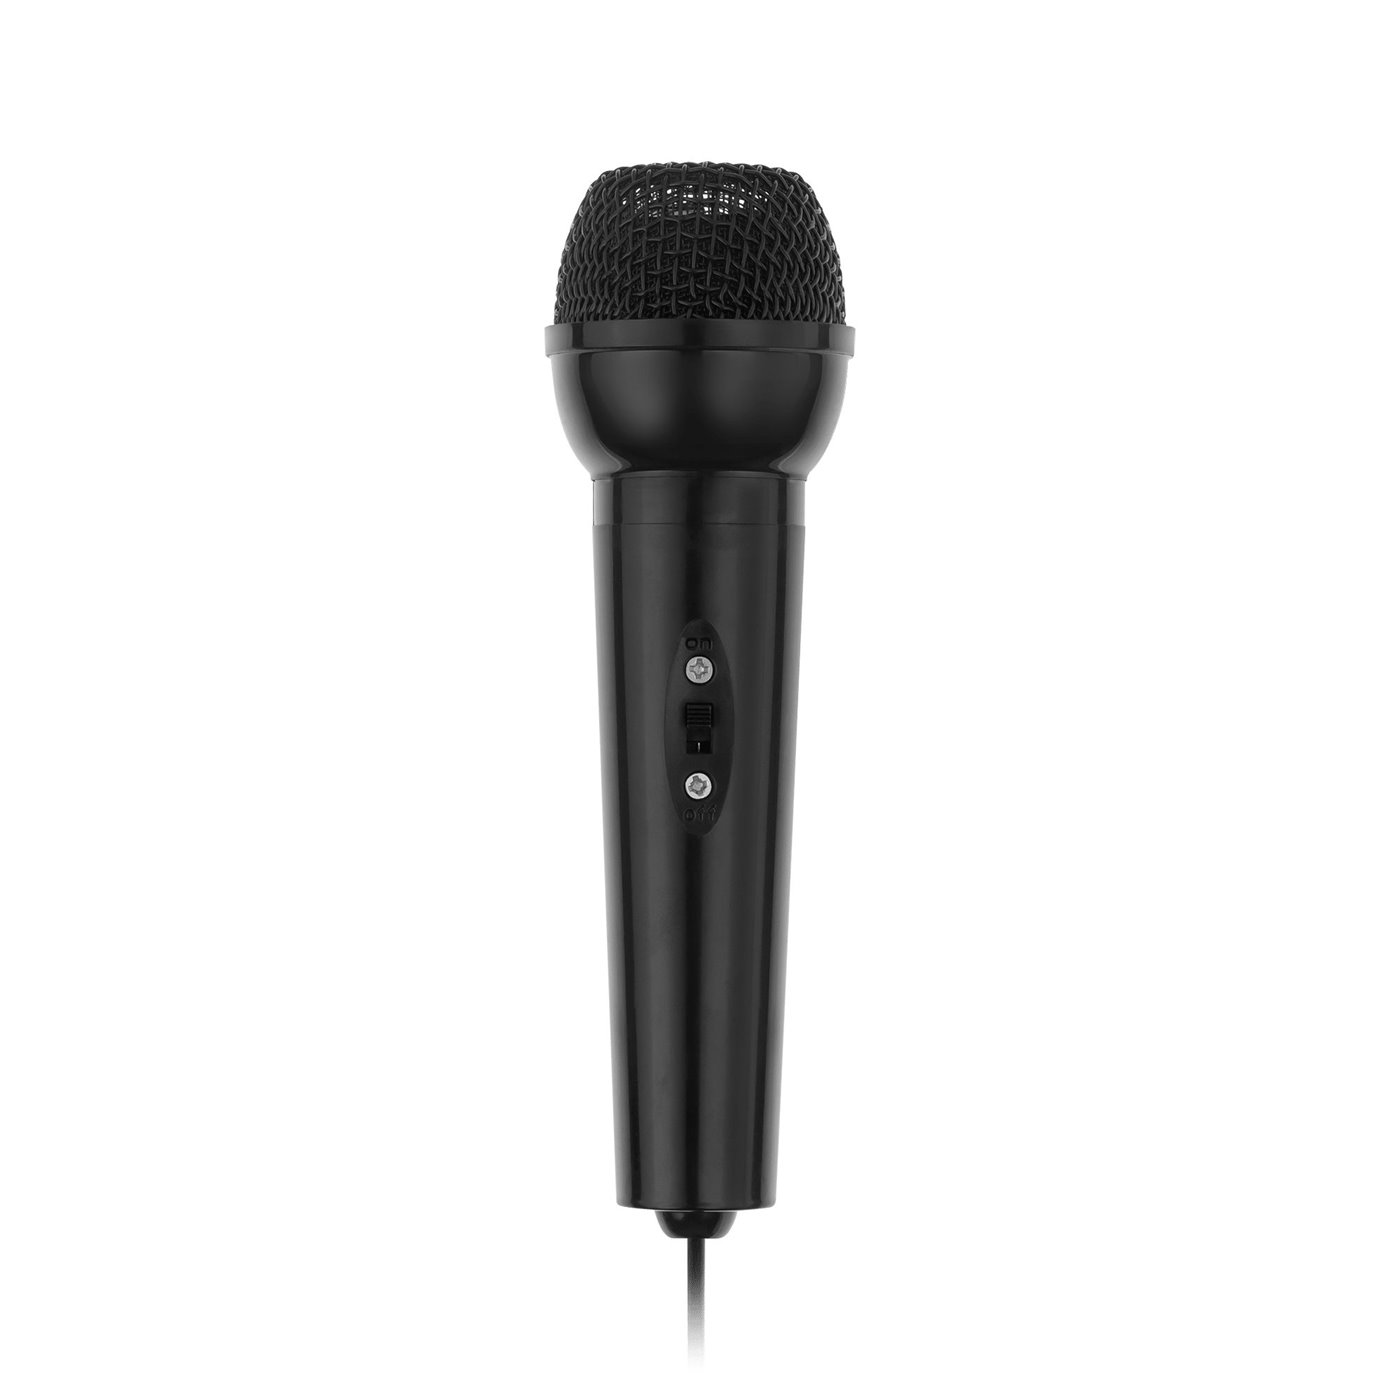 Mikrofón karaoke, jack 3,5mm AZUSA